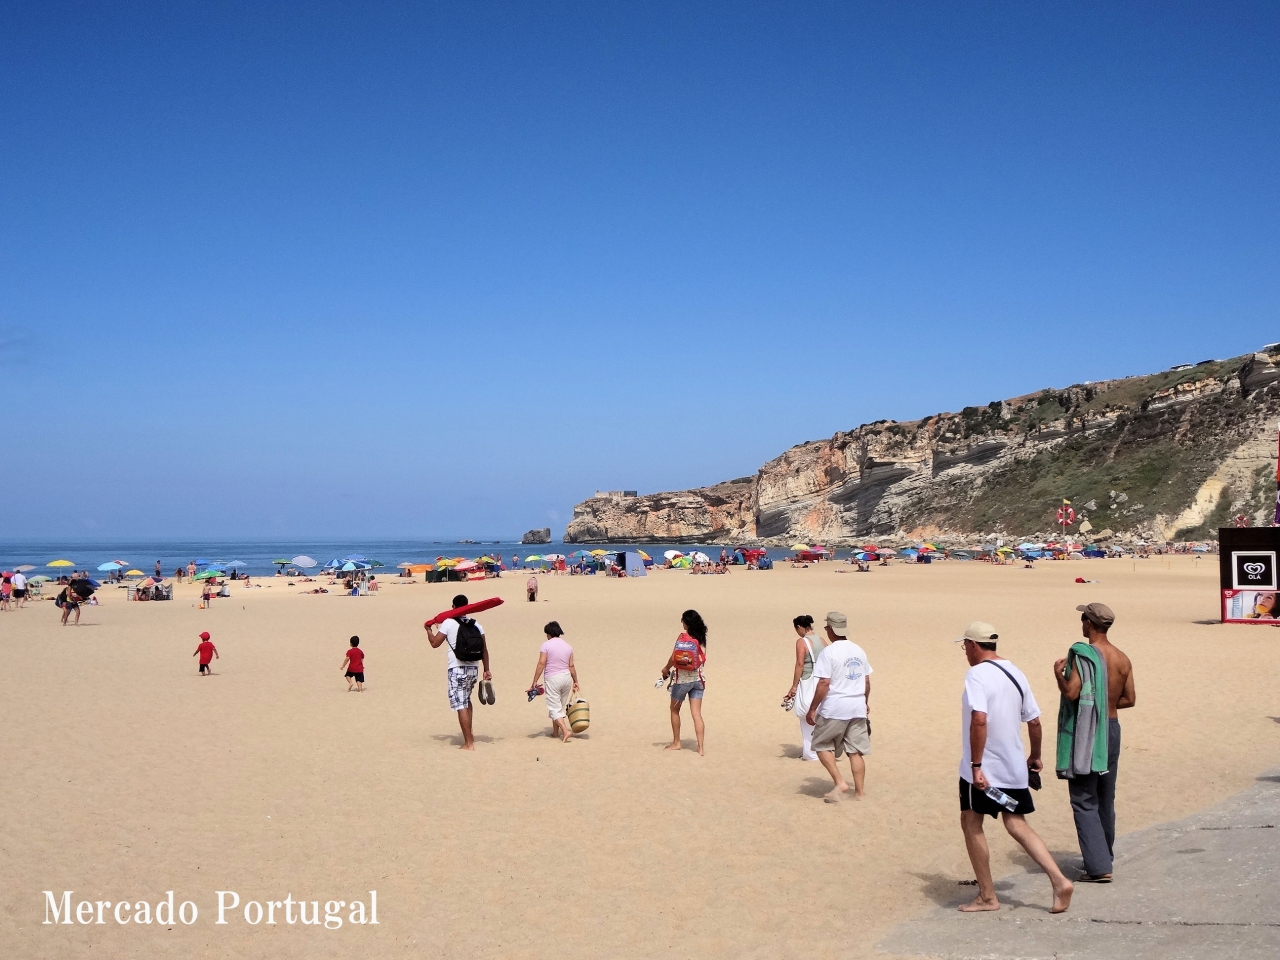 ポルトガル人と言えばビーチ。家族そろってまっすぐ向かっています。